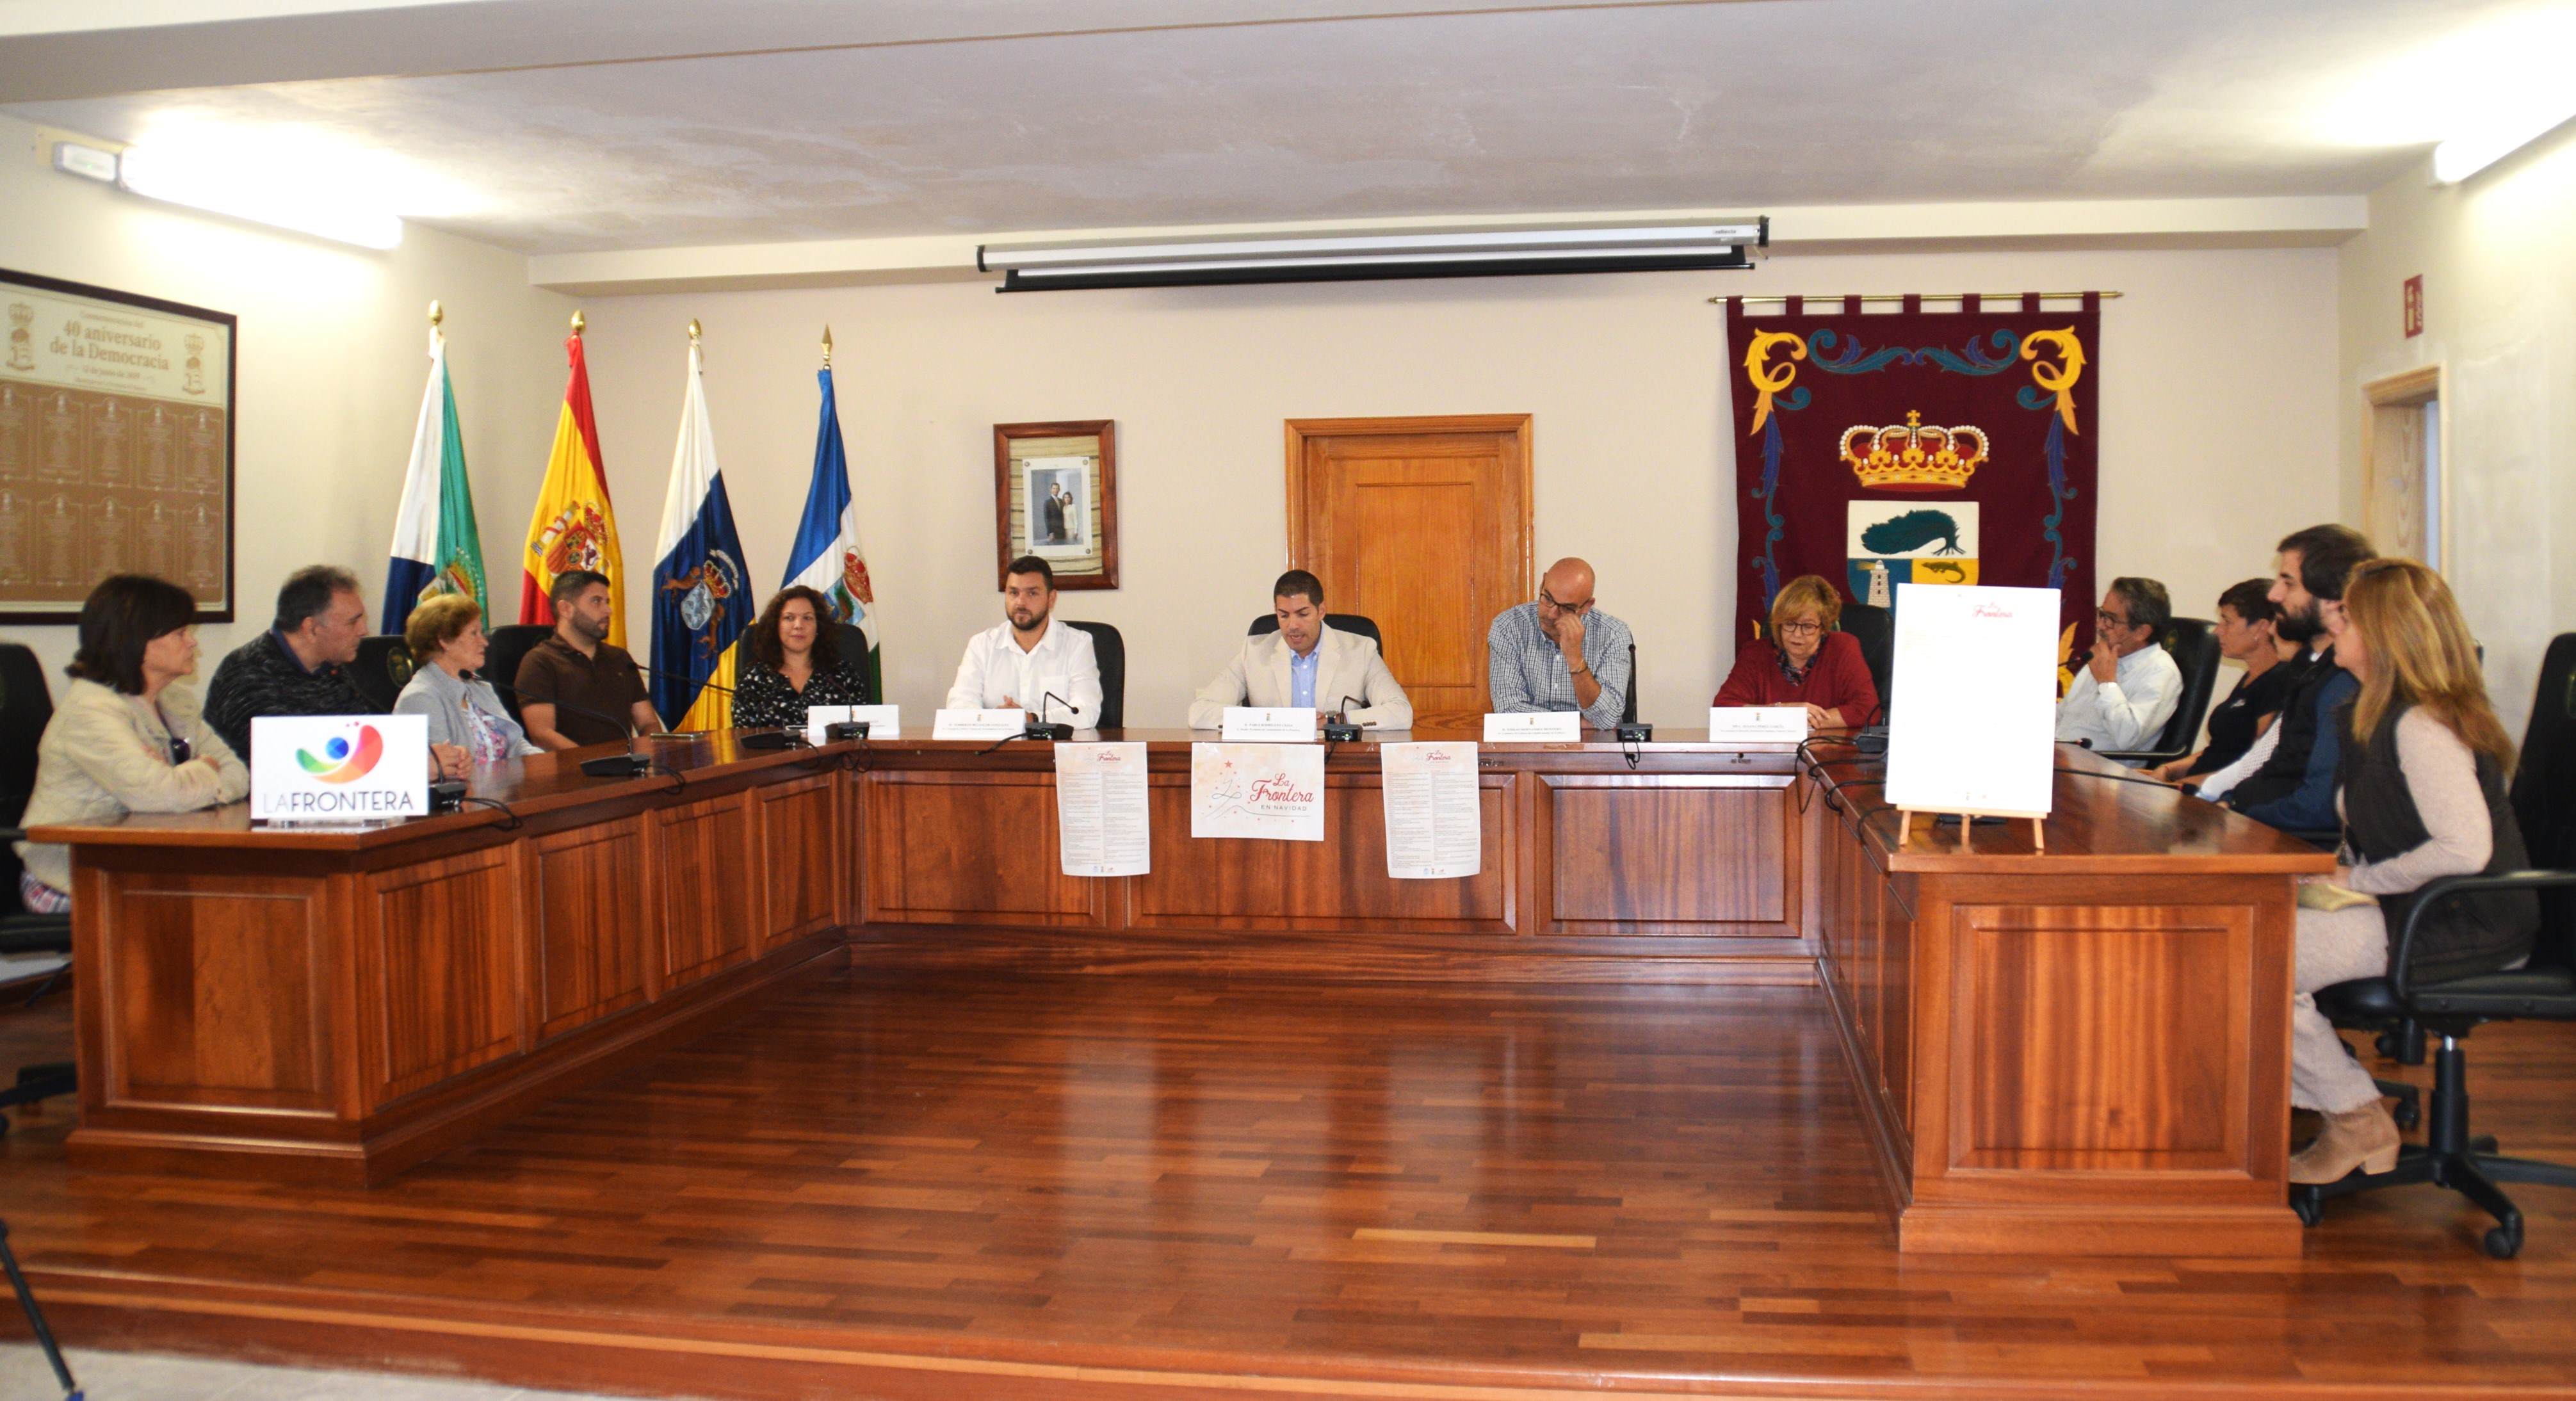 Distintas actividades dinamizarán el municipio de La Frontera durante el mes de diciembre